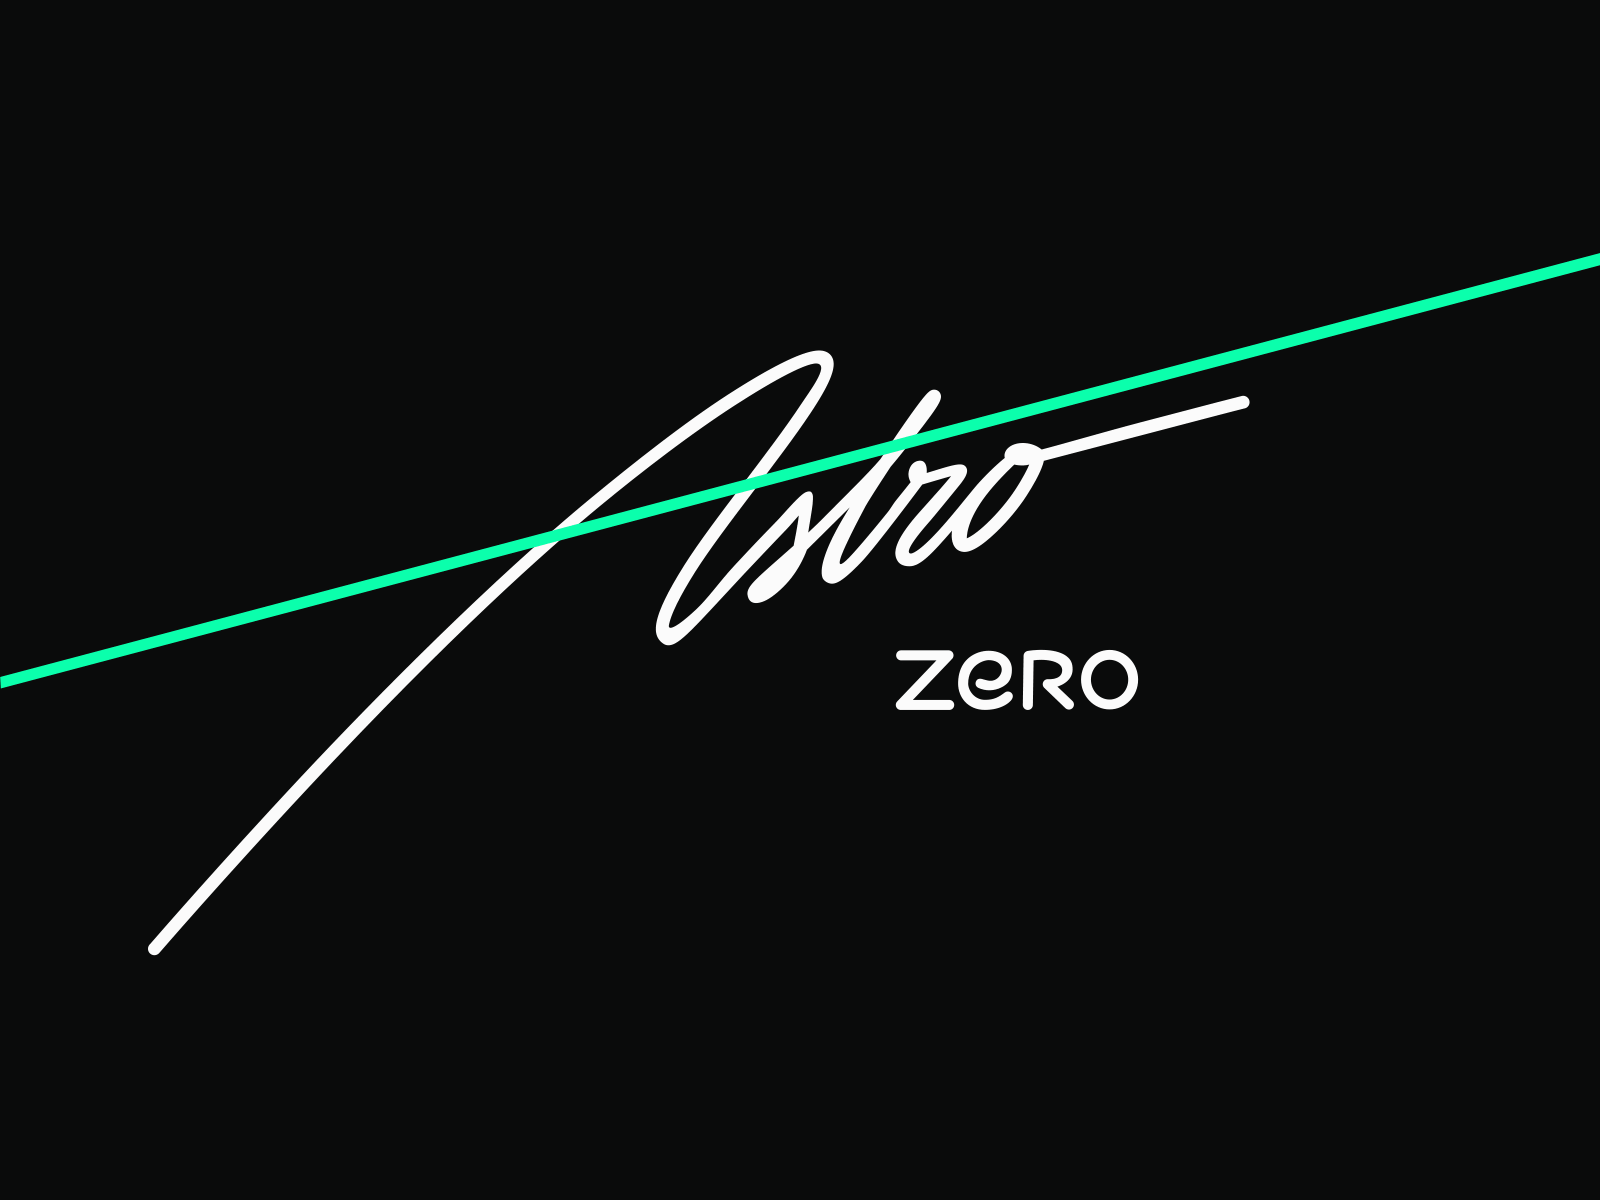 Astro Zero